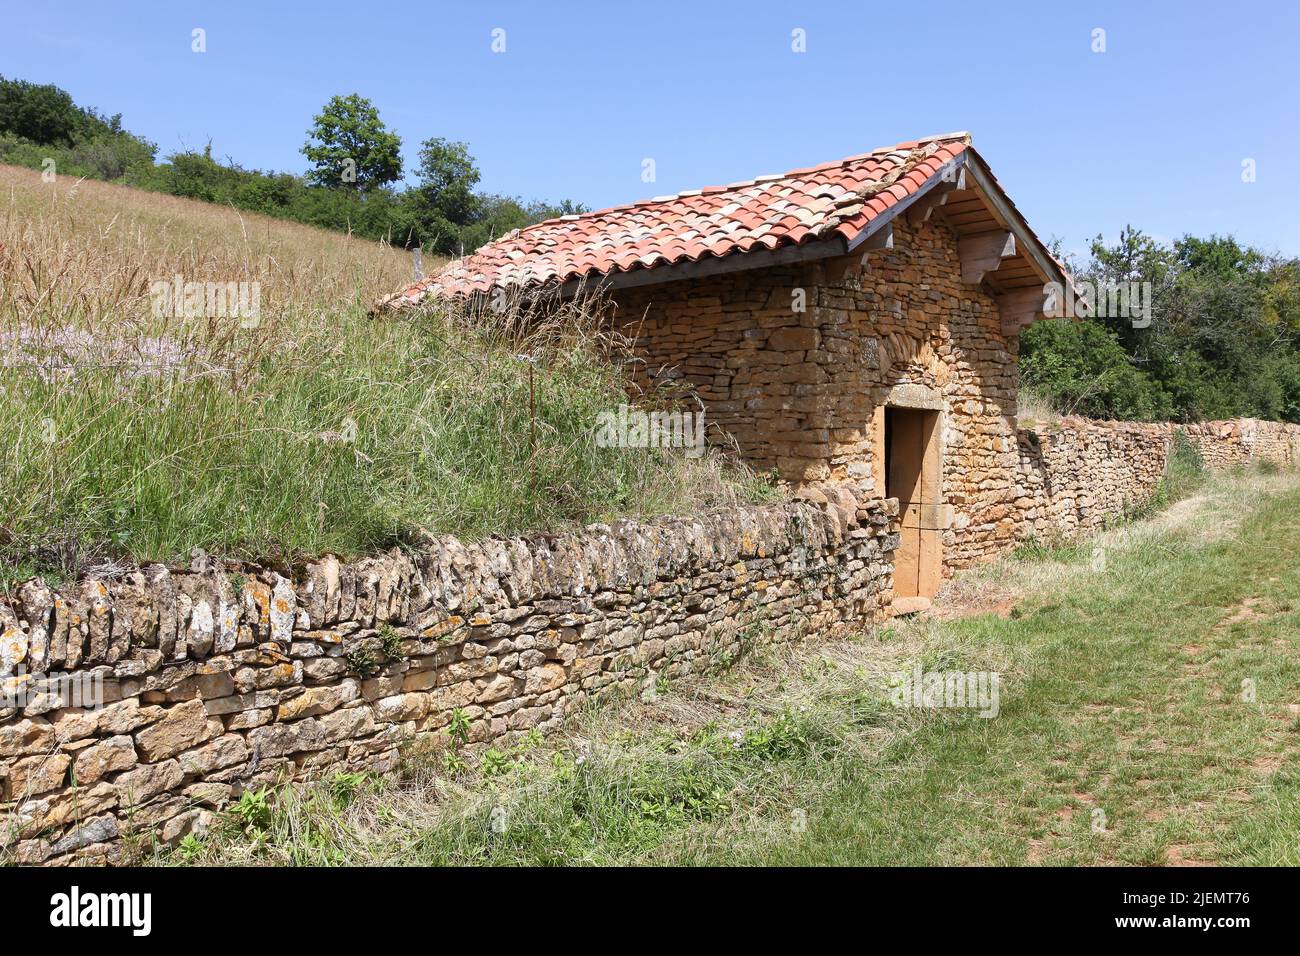 Típica cabaña de piedra llamada cadole en lengua francesa en Theize, Beaujolais, Francia Foto de stock